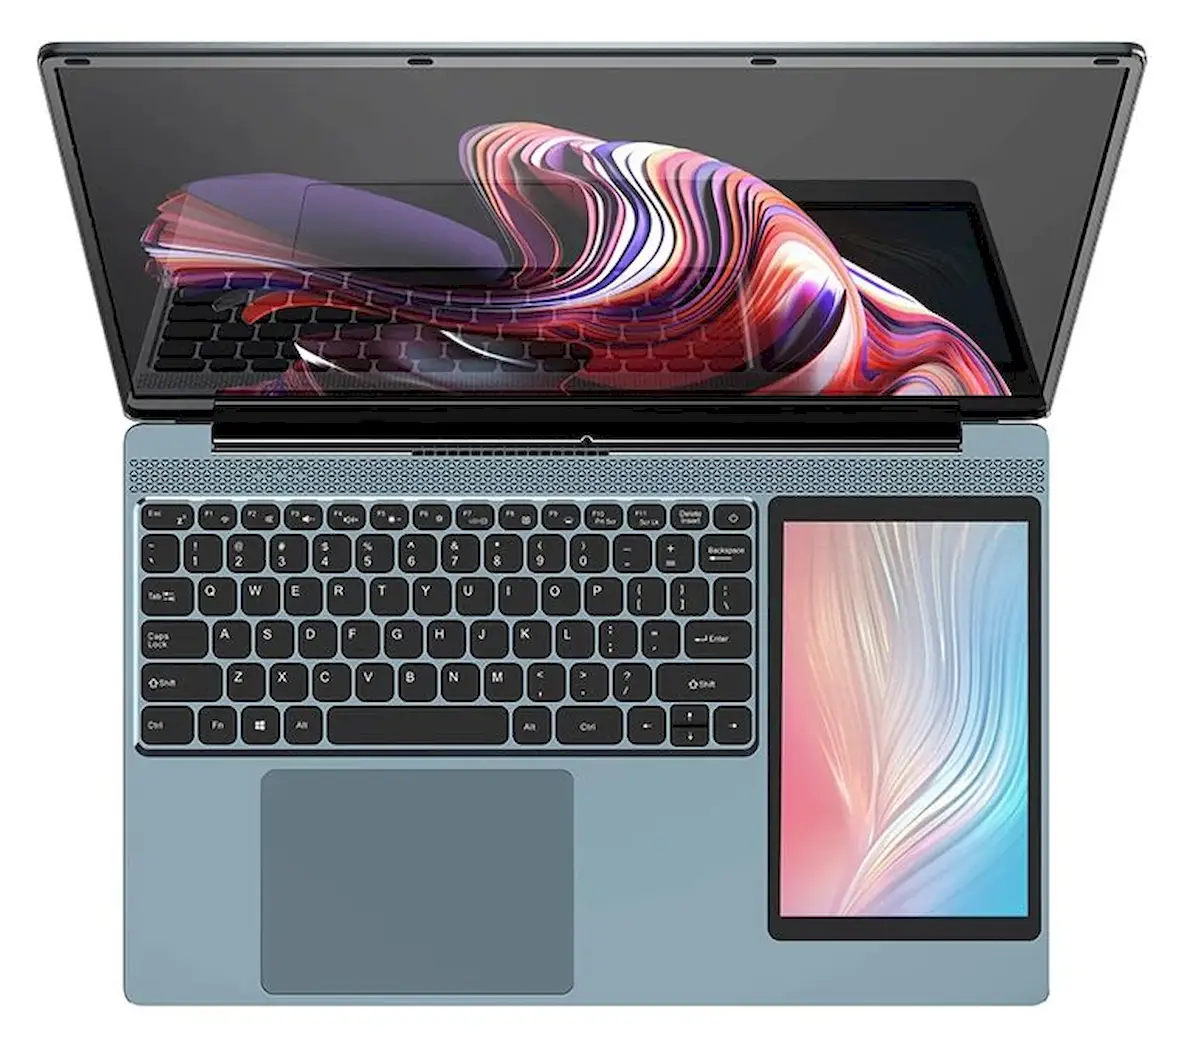 Topton L10, um laptop com um tablet embutido ao lado do teclado